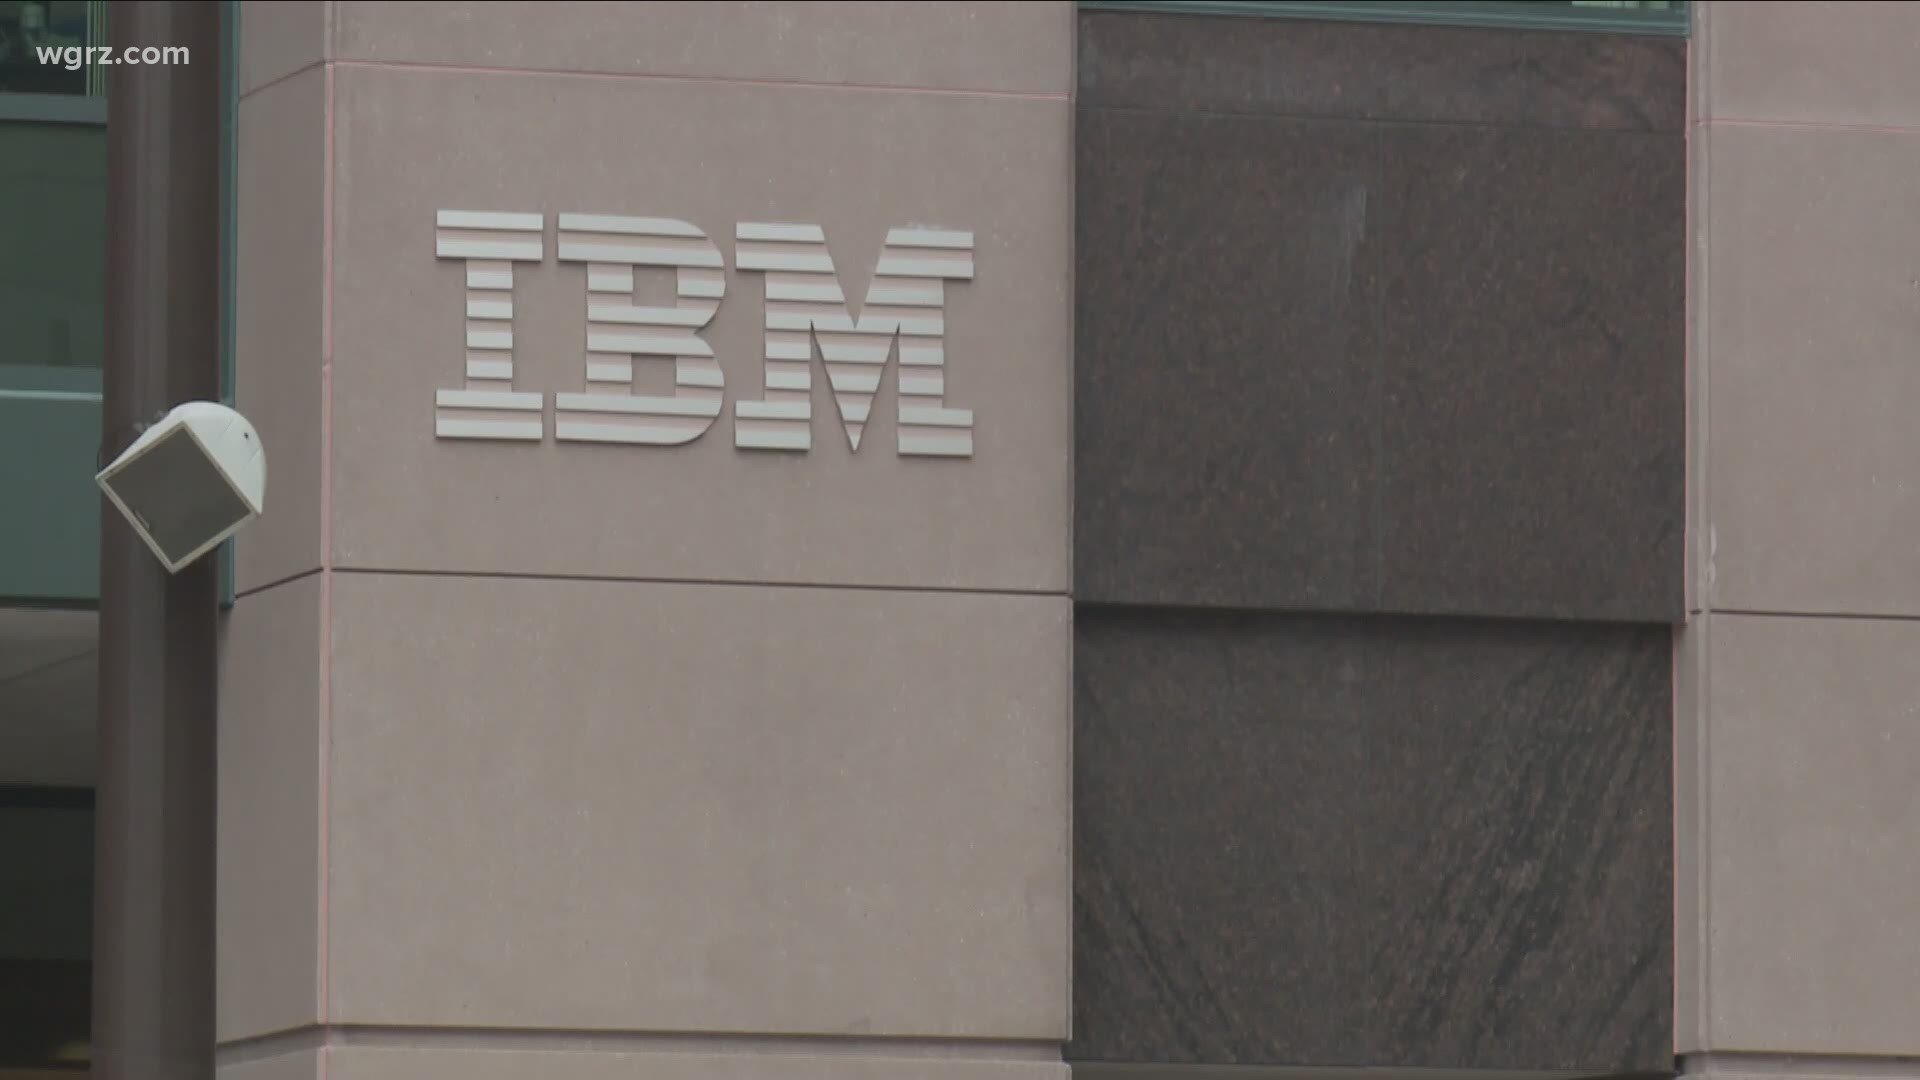 IBM Key Center layoffs